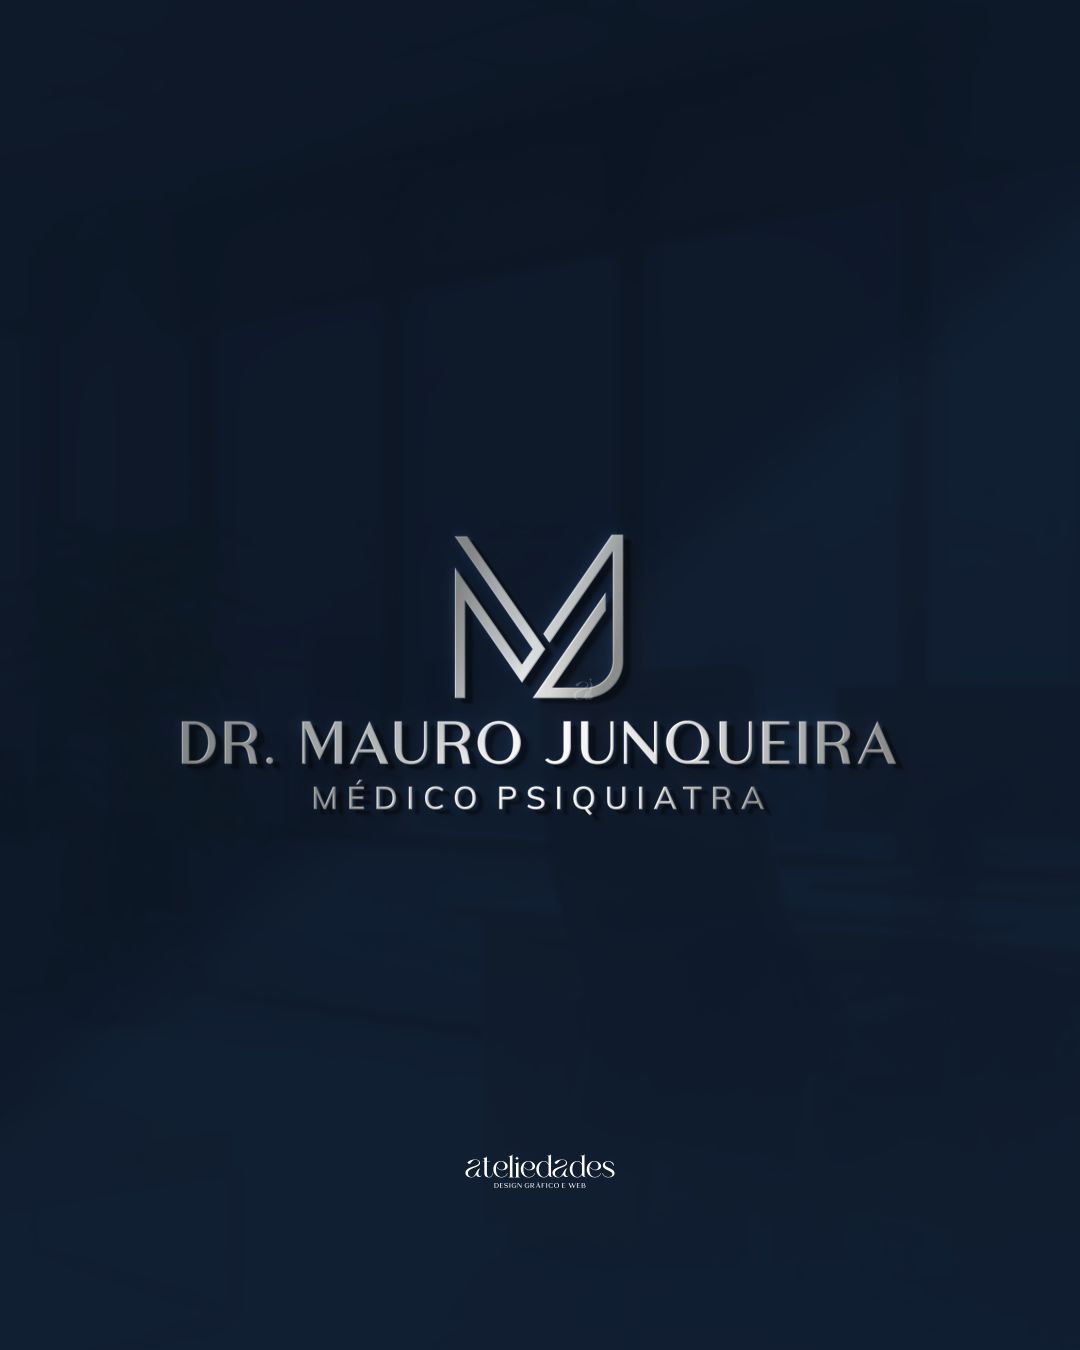 criação de logotipo psiquiatria dr mauro junqueira